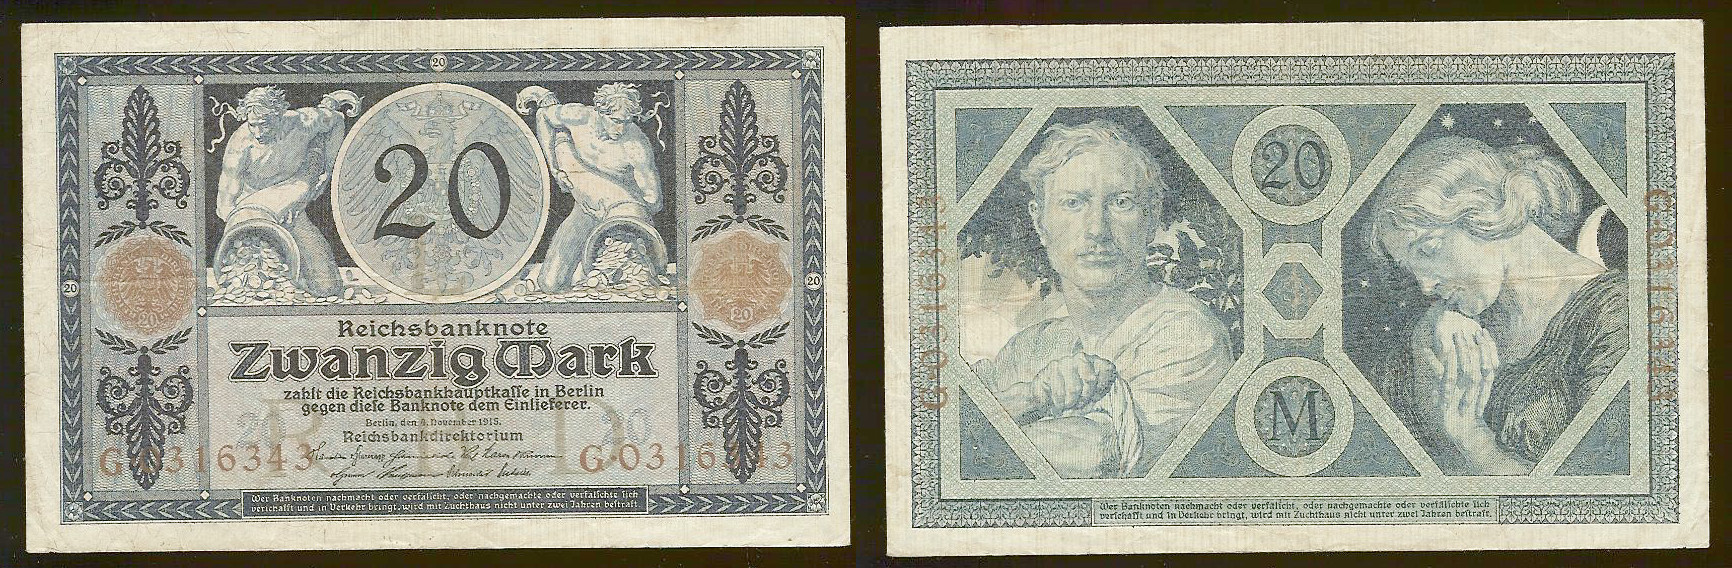 20 Mark Reichsbanknote - 04.11.1915 P.63